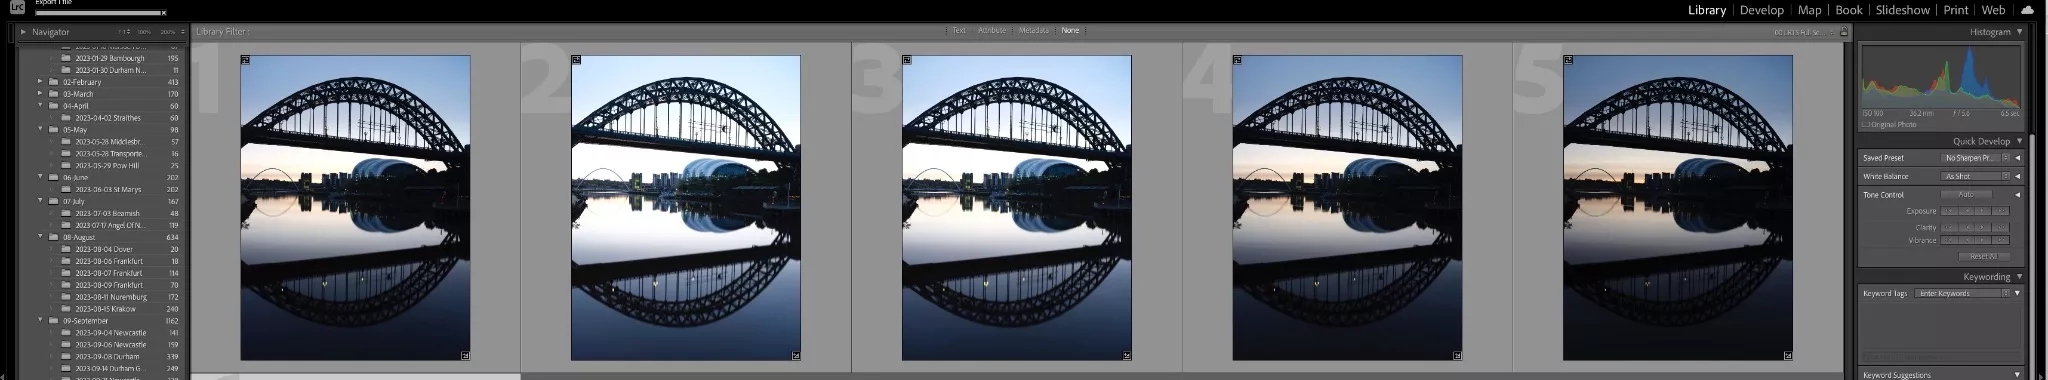 La séquence complète du support de la photo du pont Tyne